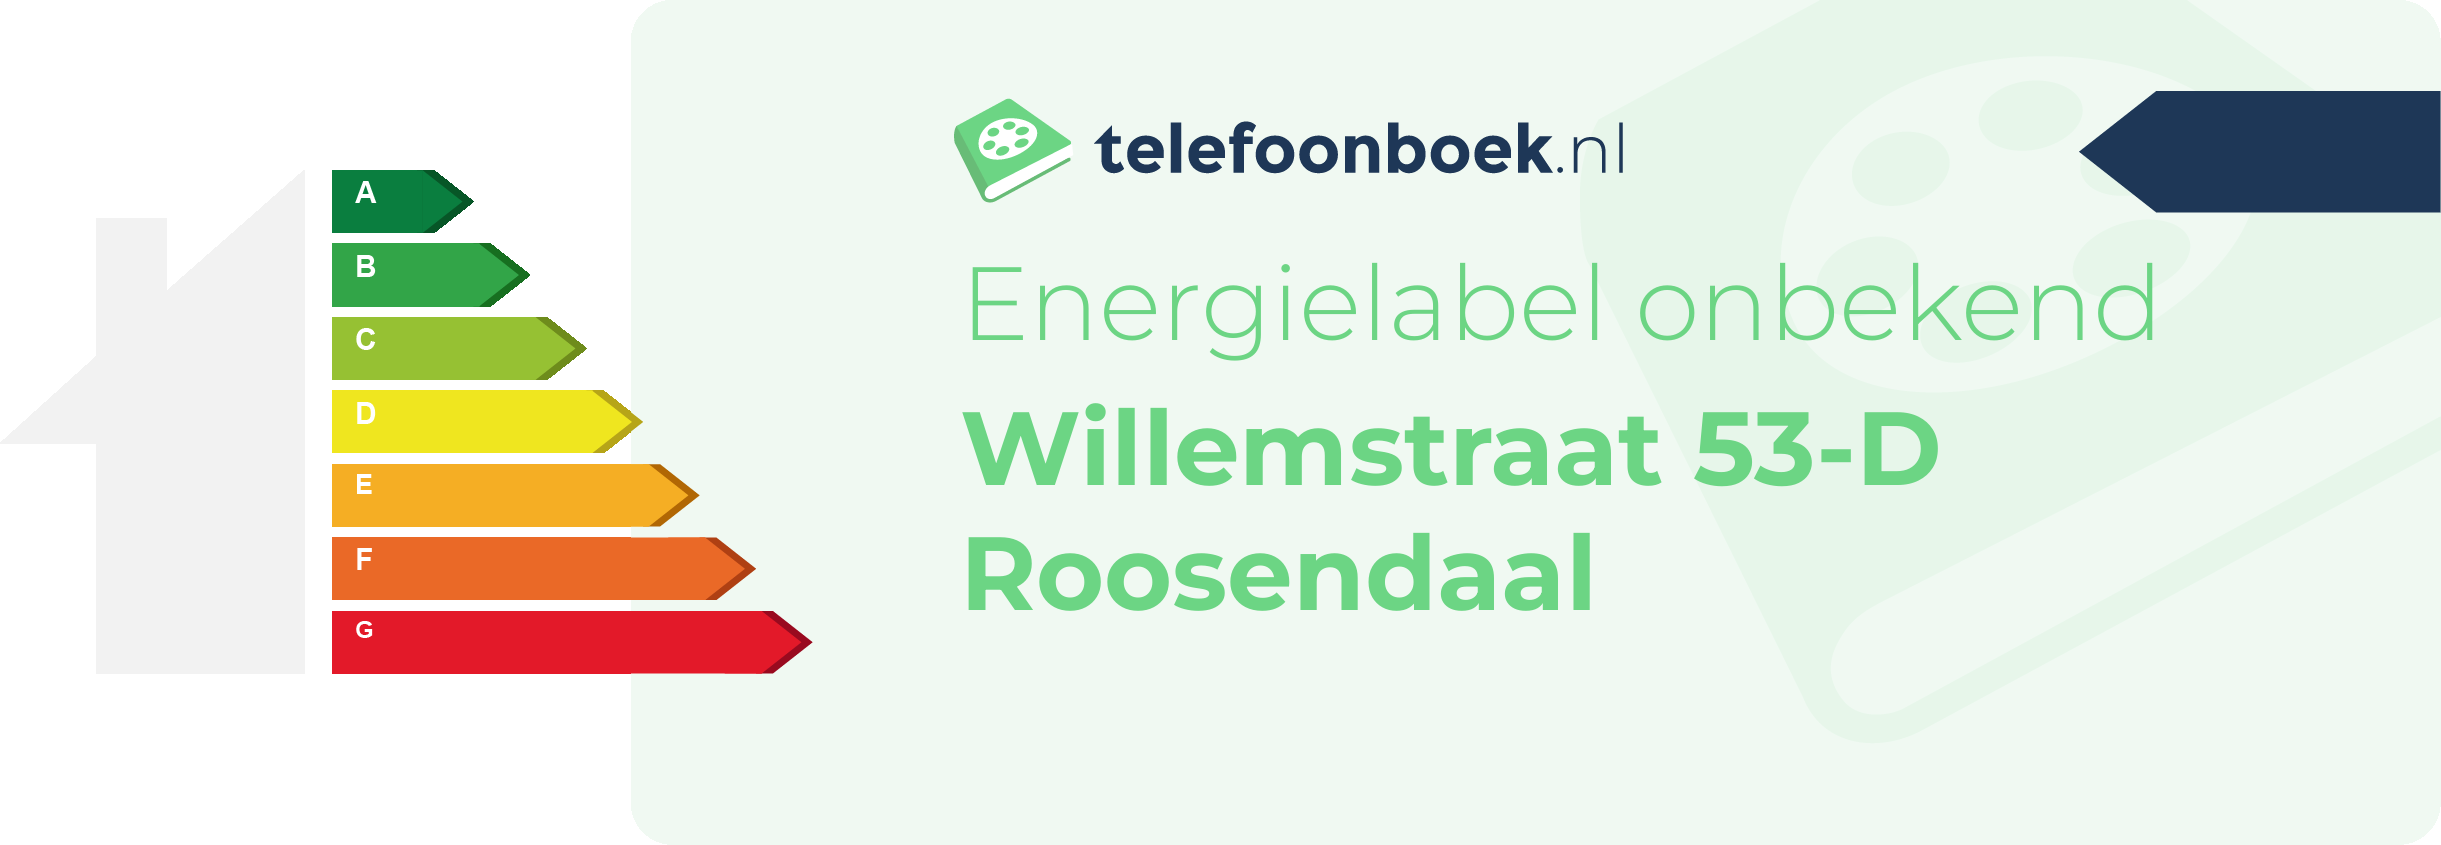 Energielabel Willemstraat 53-D Roosendaal